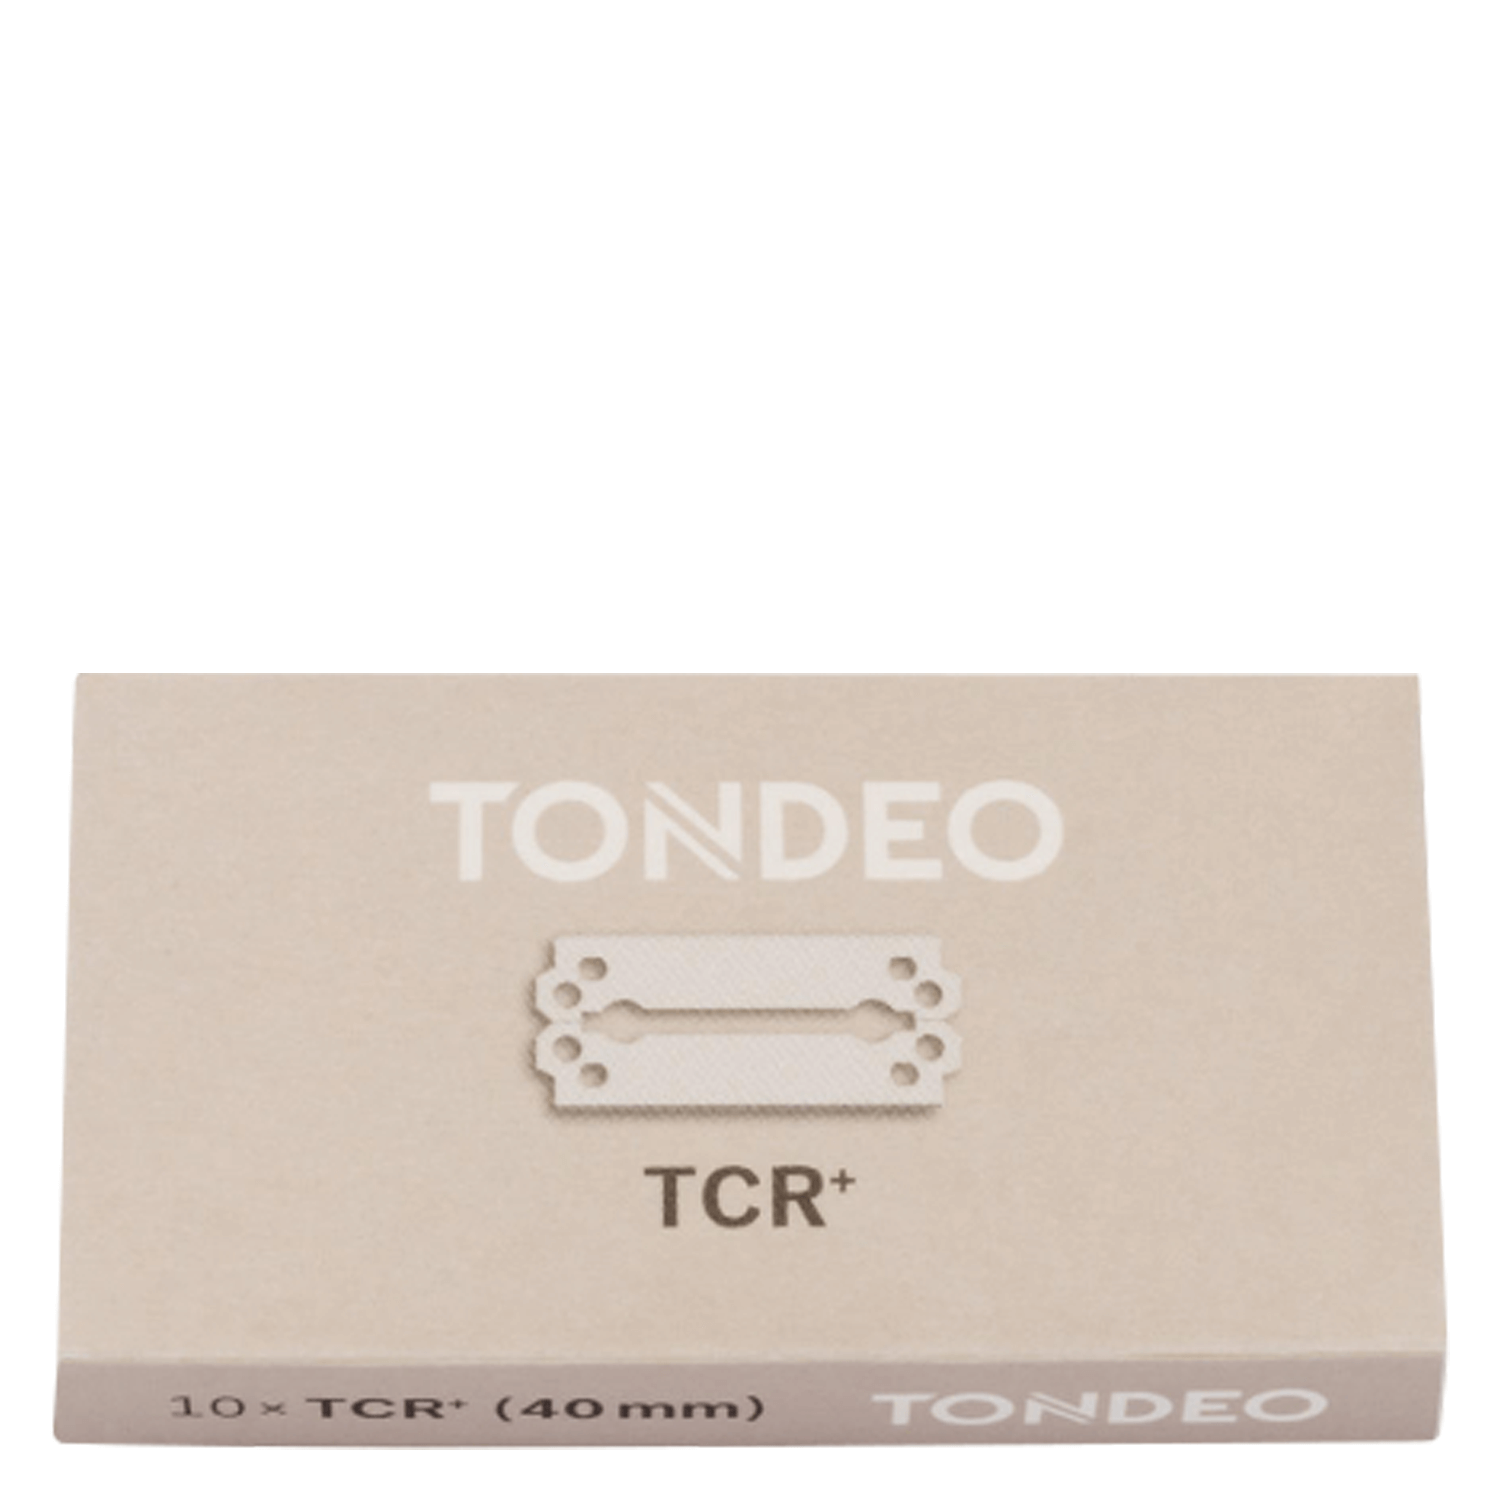 Produktbild von Tondeo Blades - TCR+ Blades